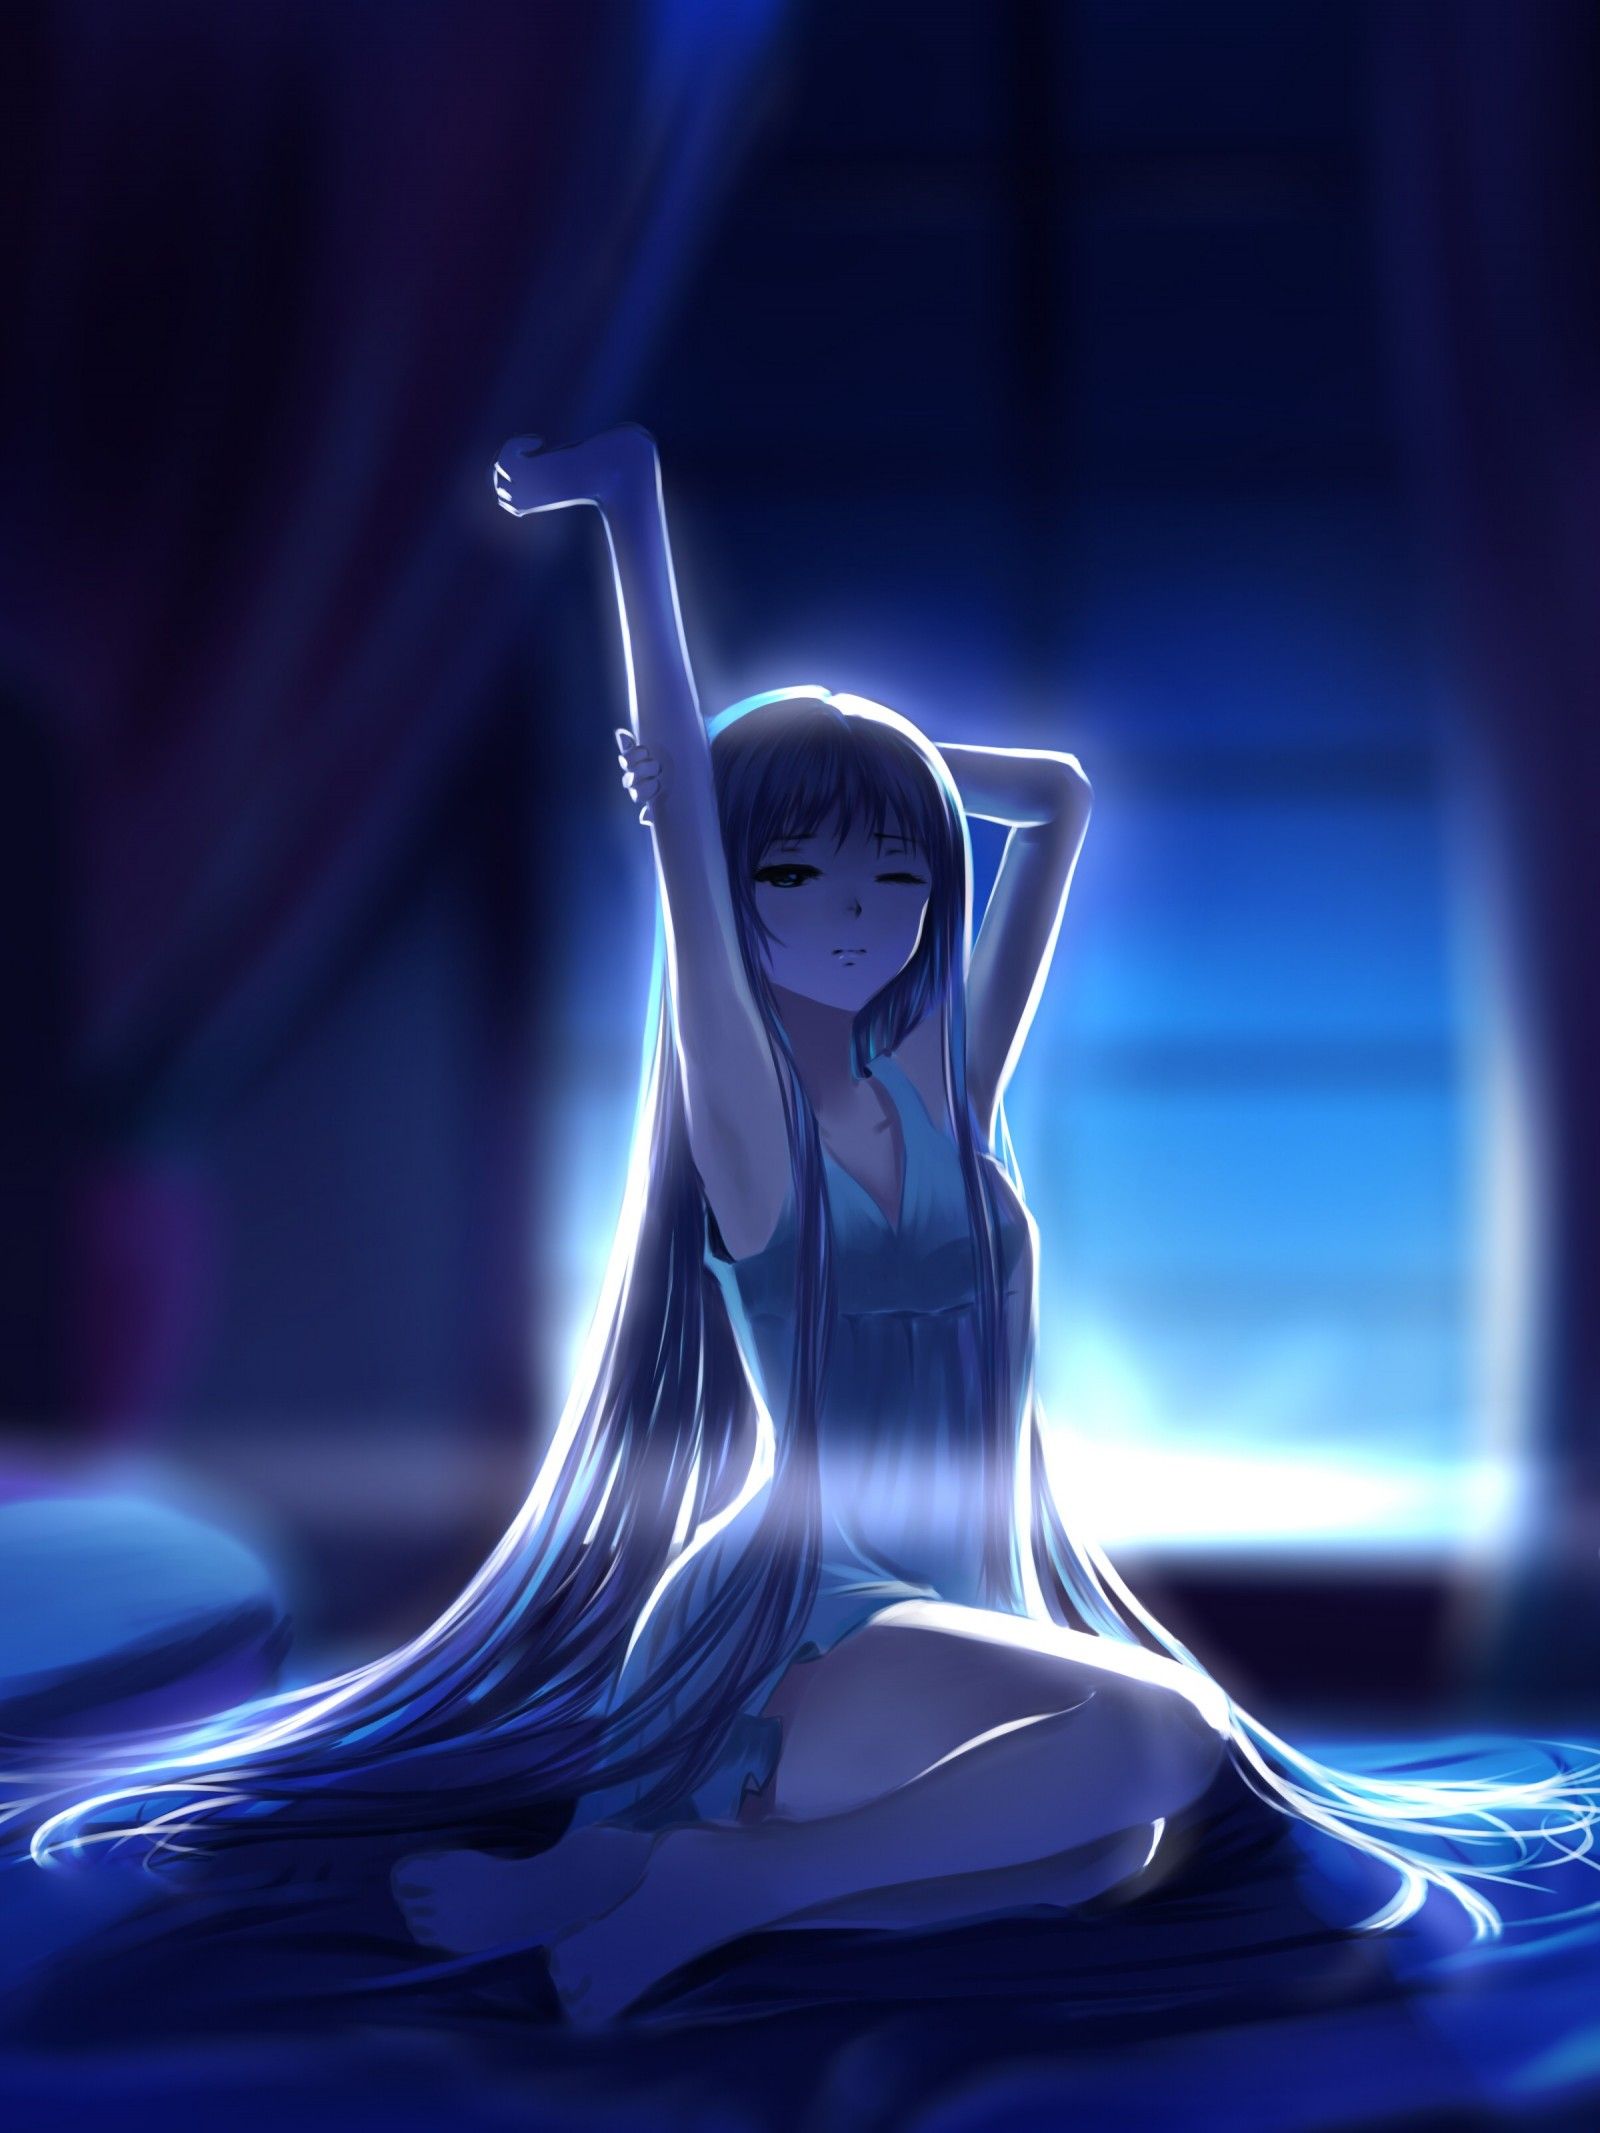 night, long hair, anime, anime girls, reflection, bed, blue, glass, feet, light, darkness, screenshot, computer wallpaper